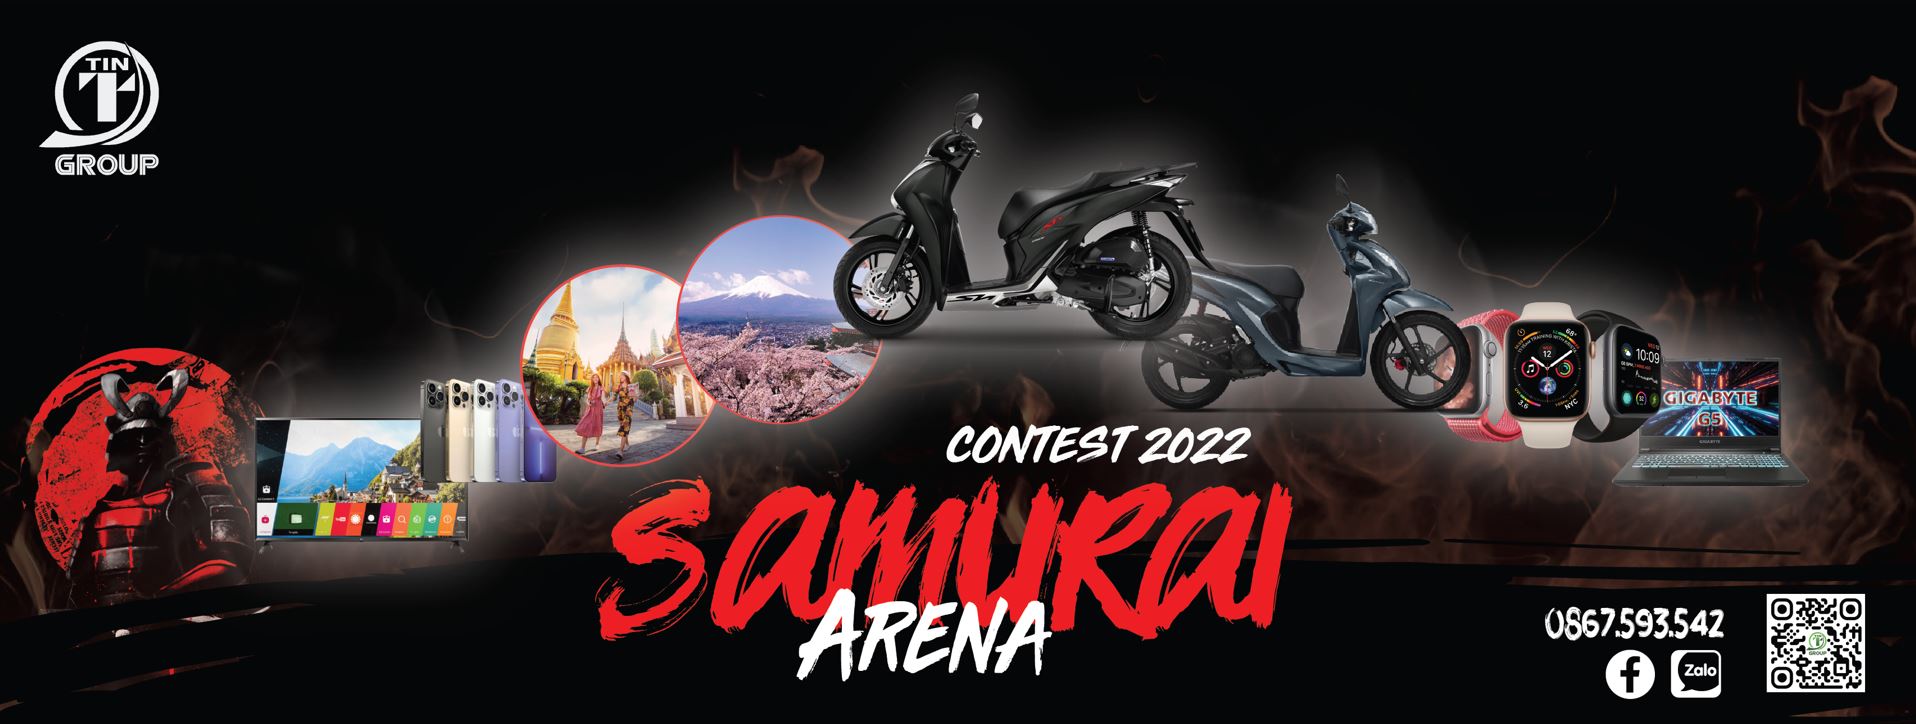 Contest 2022 : Đấu trường Samurai - Tổng giải thưởng lên đến 500 Triệu